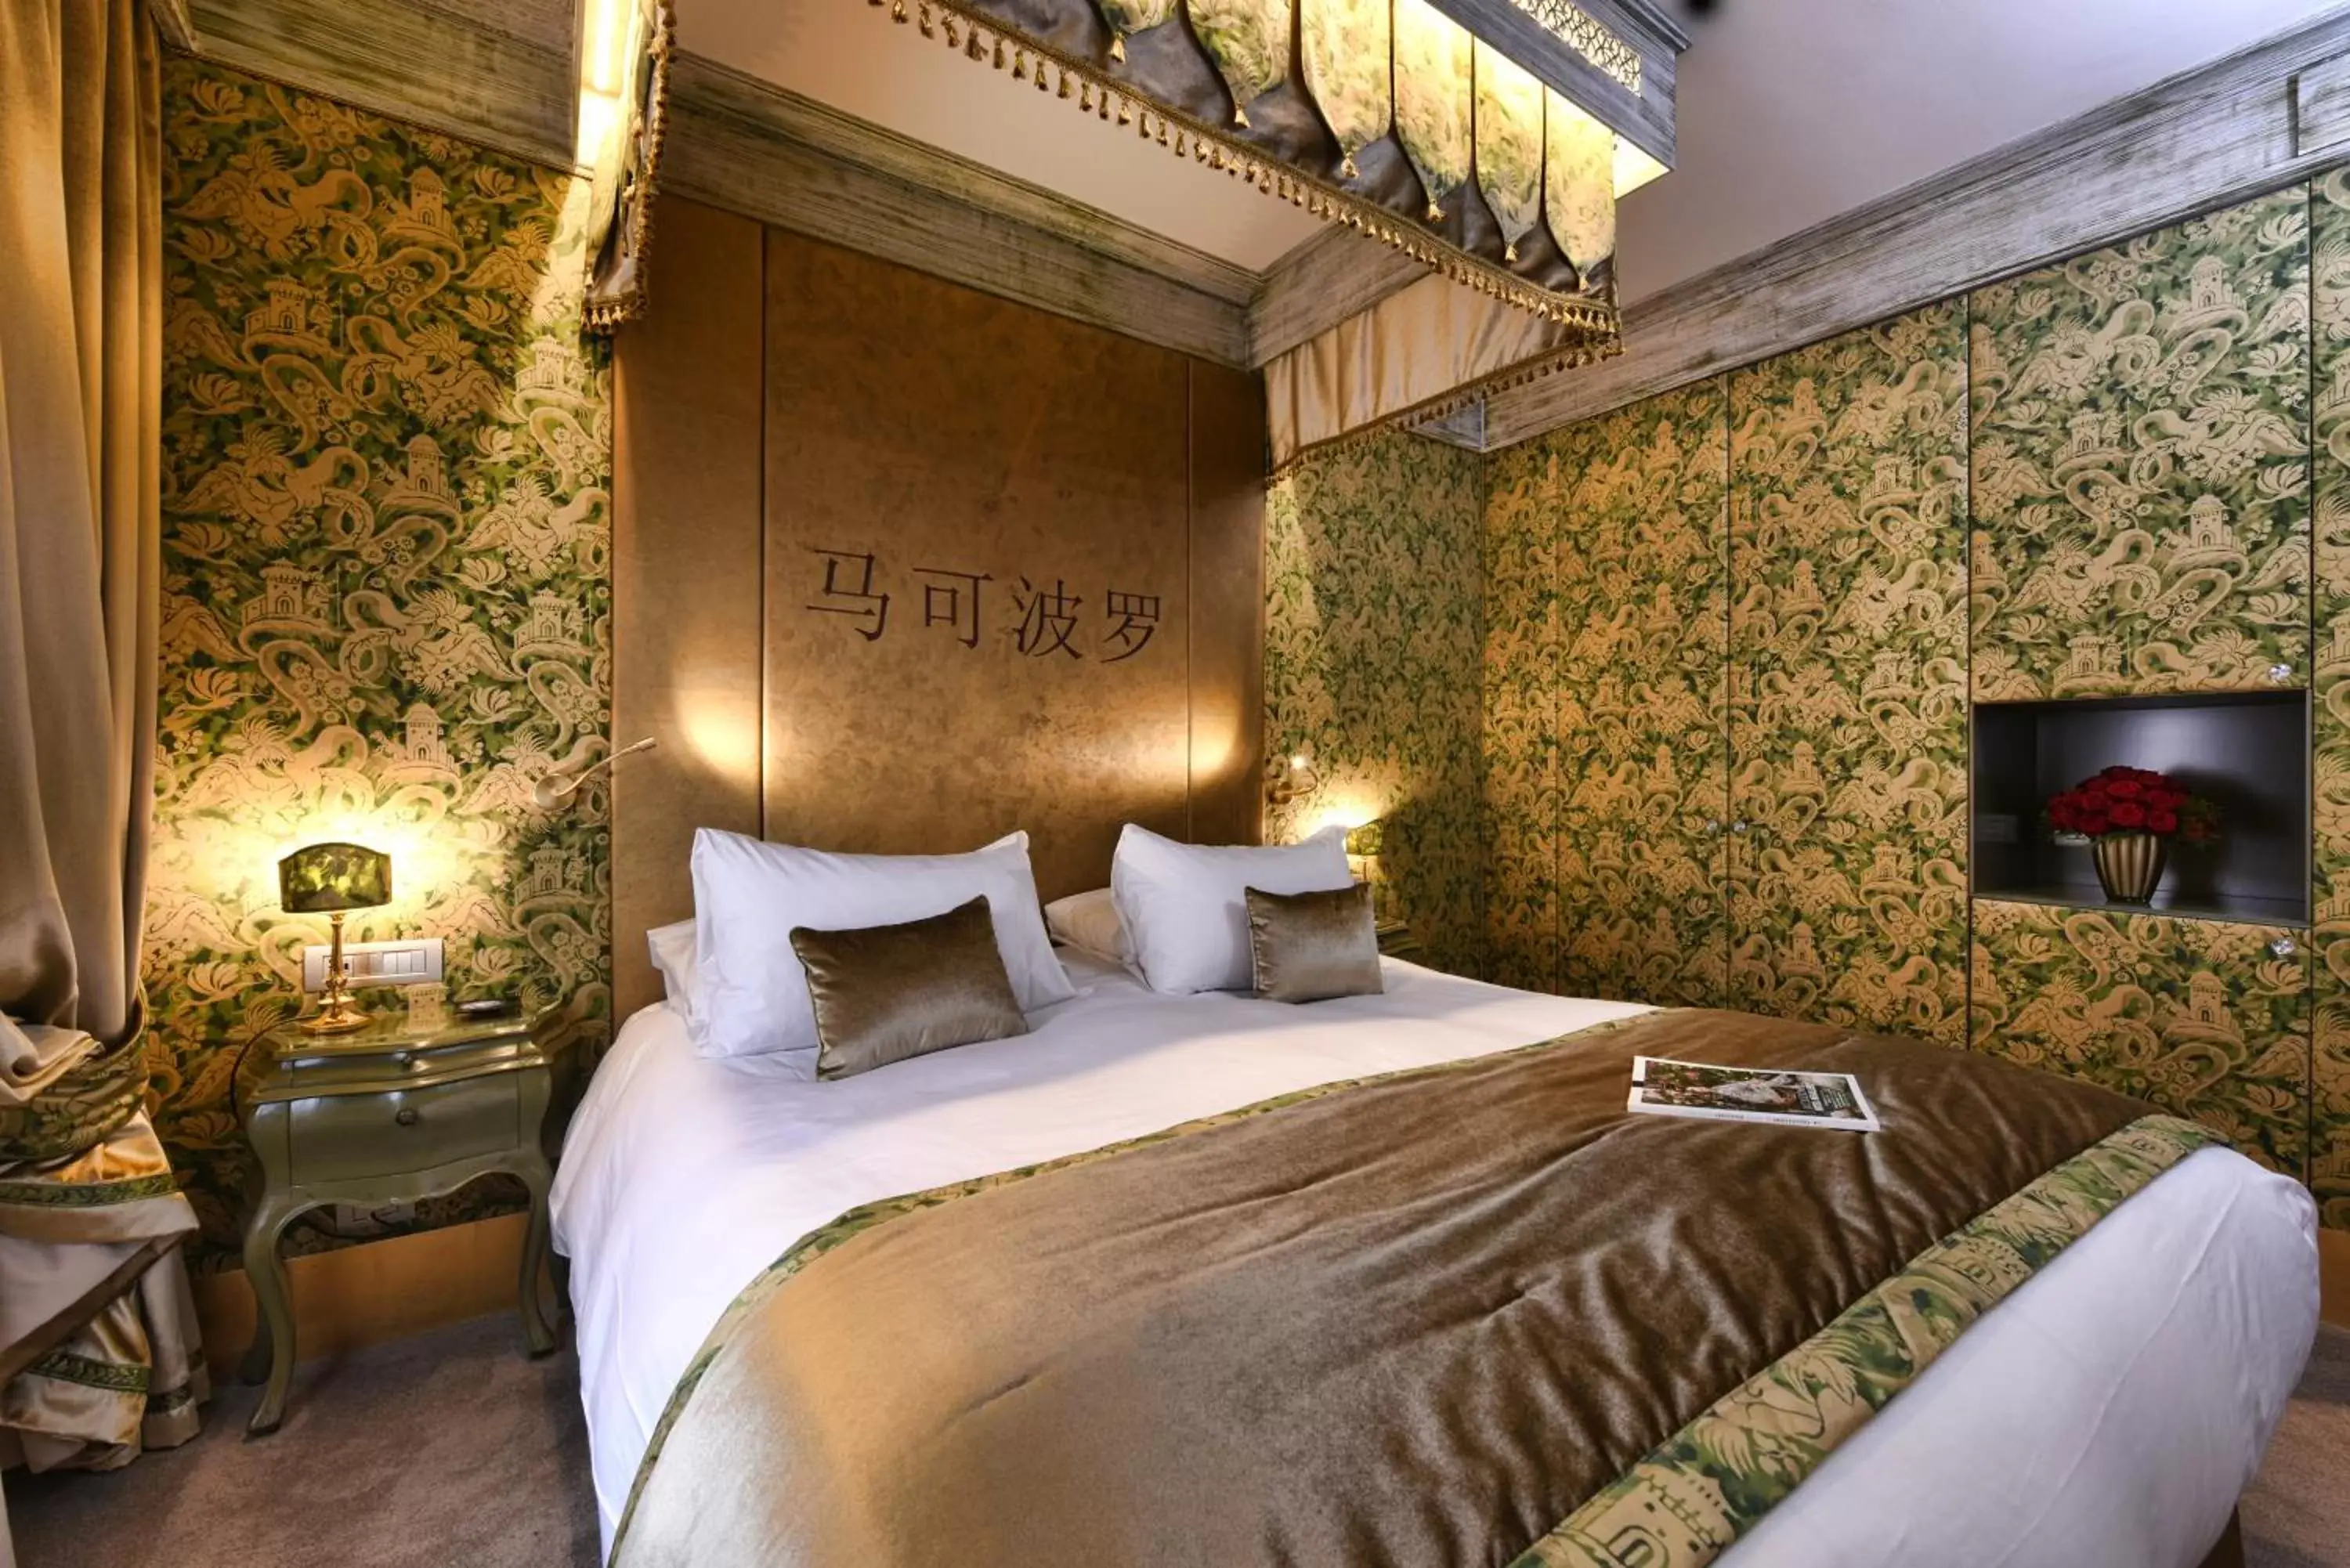 Bedroom, Bed in Hotel Papadopoli Venezia - MGallery Collection